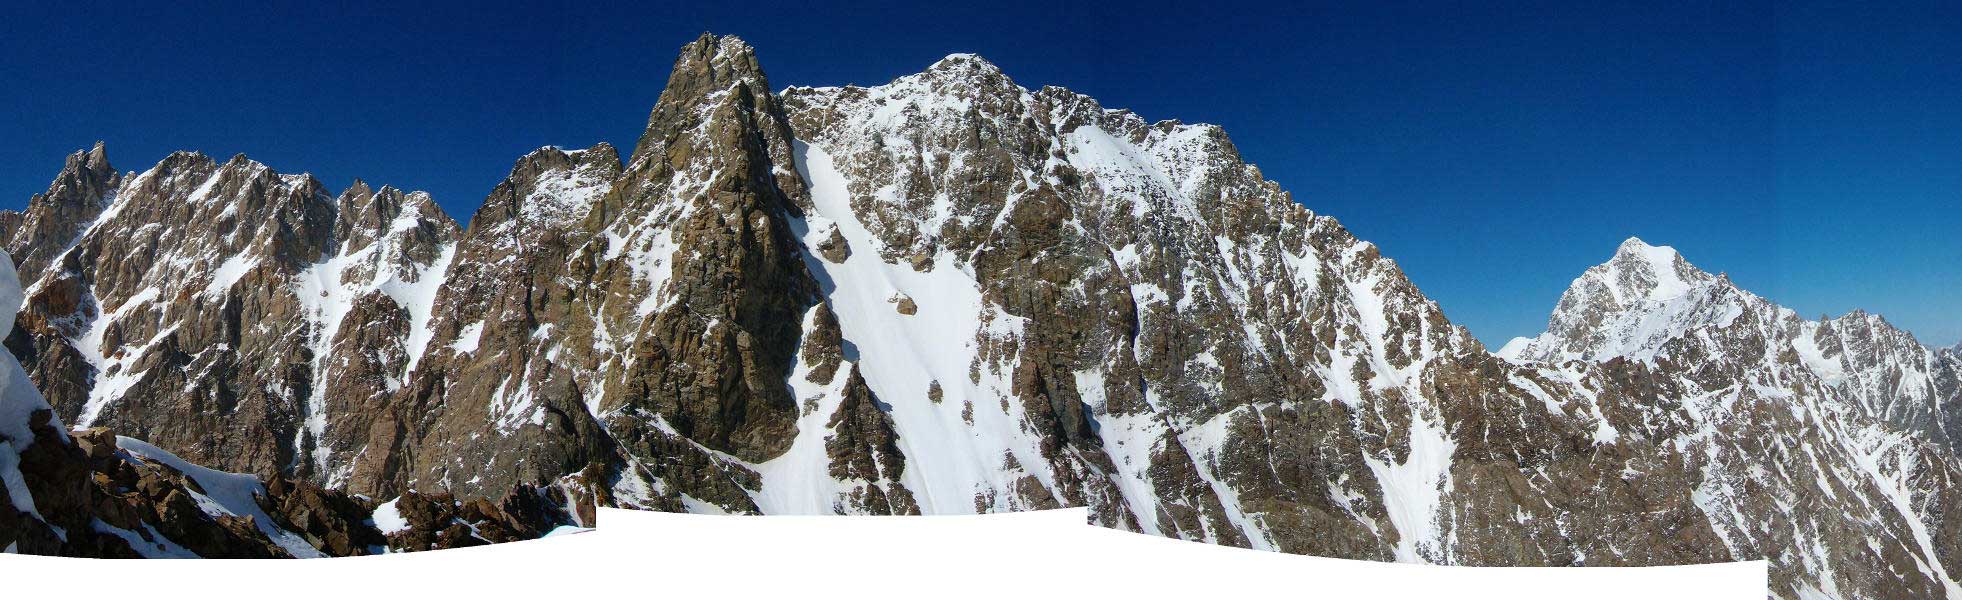 Северный массив. Слева отрог Дыхтау (5203), в центре Мижирги (5025), справа Коштантау (5152)